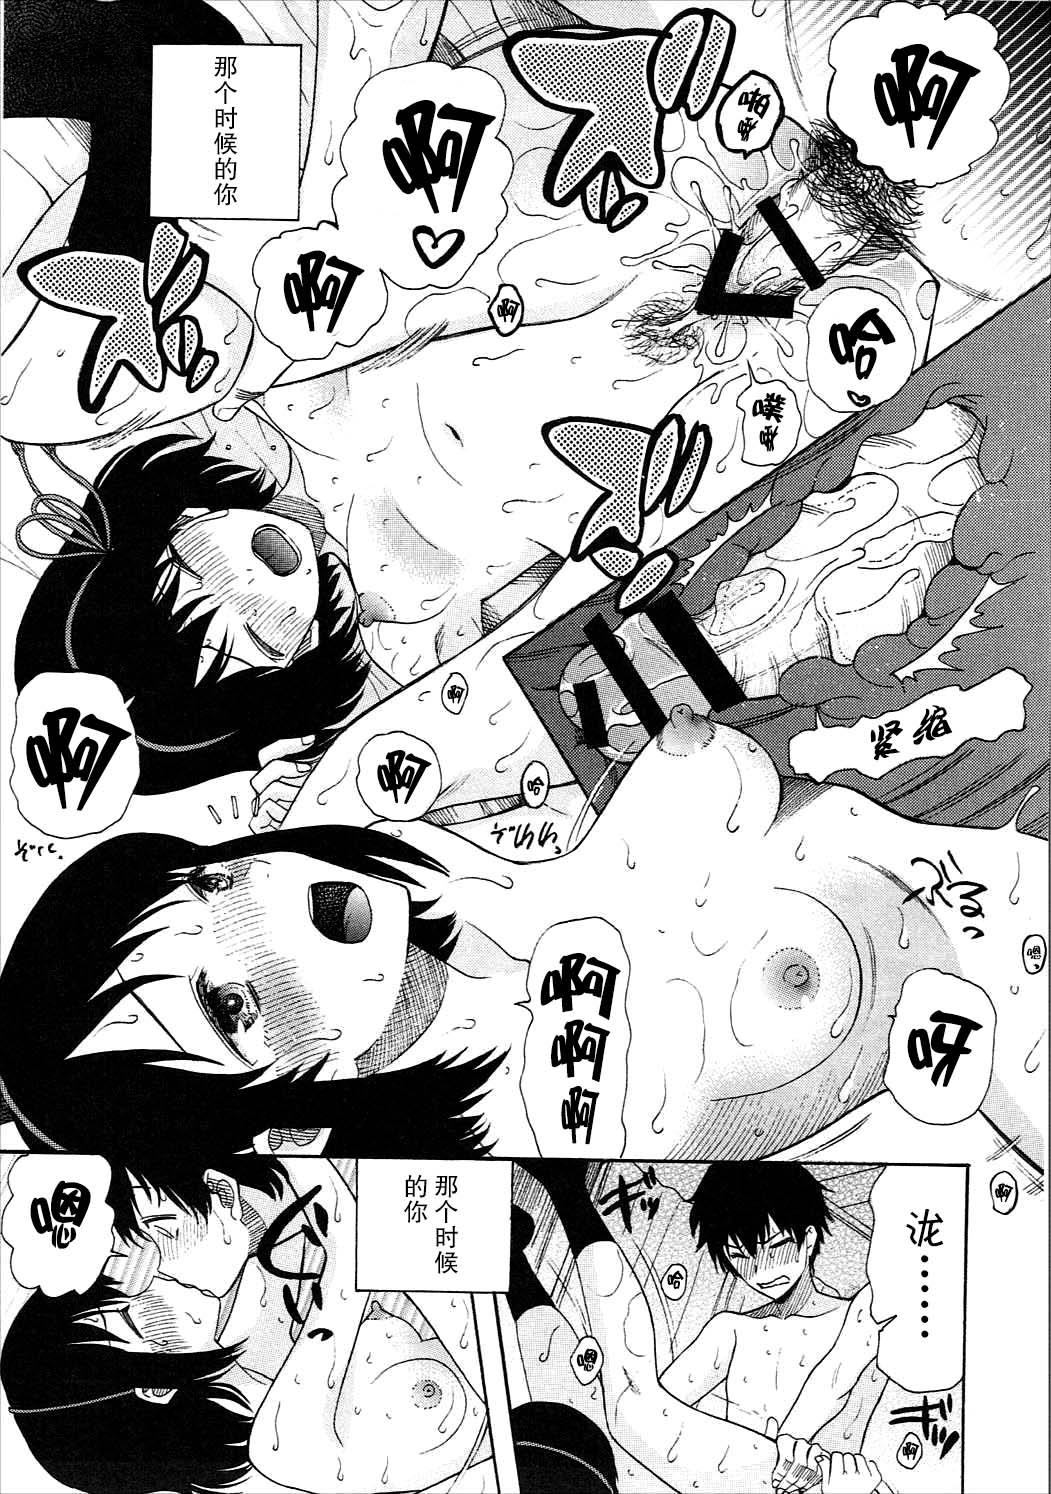 Fingers Futari no Hibi o. - Kimi no na wa. Condom - Page 12